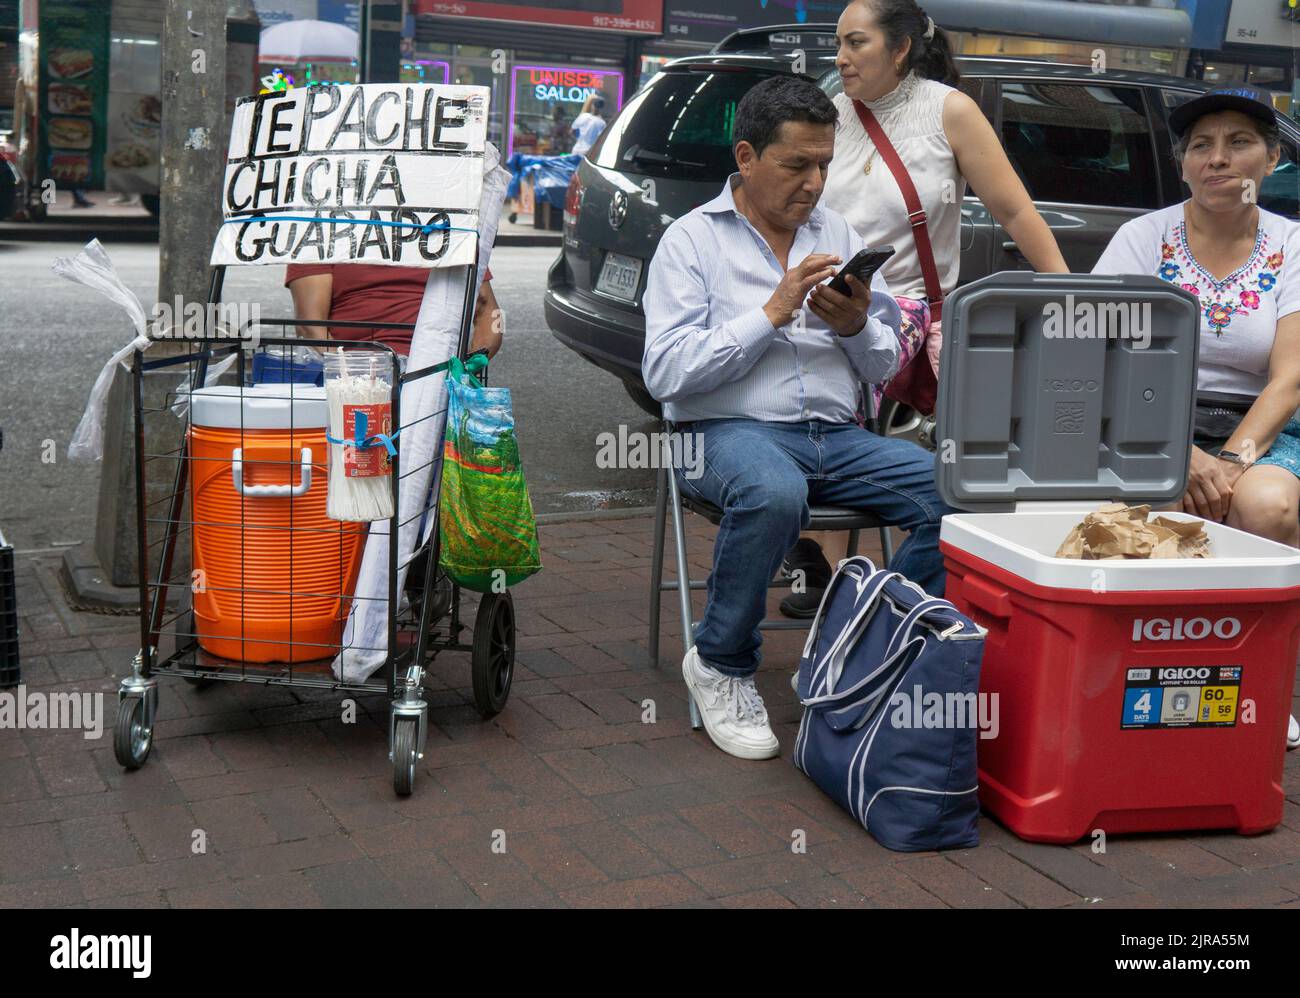 Une scène de rue sur Roosevelt Ave. À Corona comprenant la vente d'une boisson fraîche épicée, Tepache Chicha Guarapo, probablement saveur d'ananas. À Queens, New York. Banque D'Images